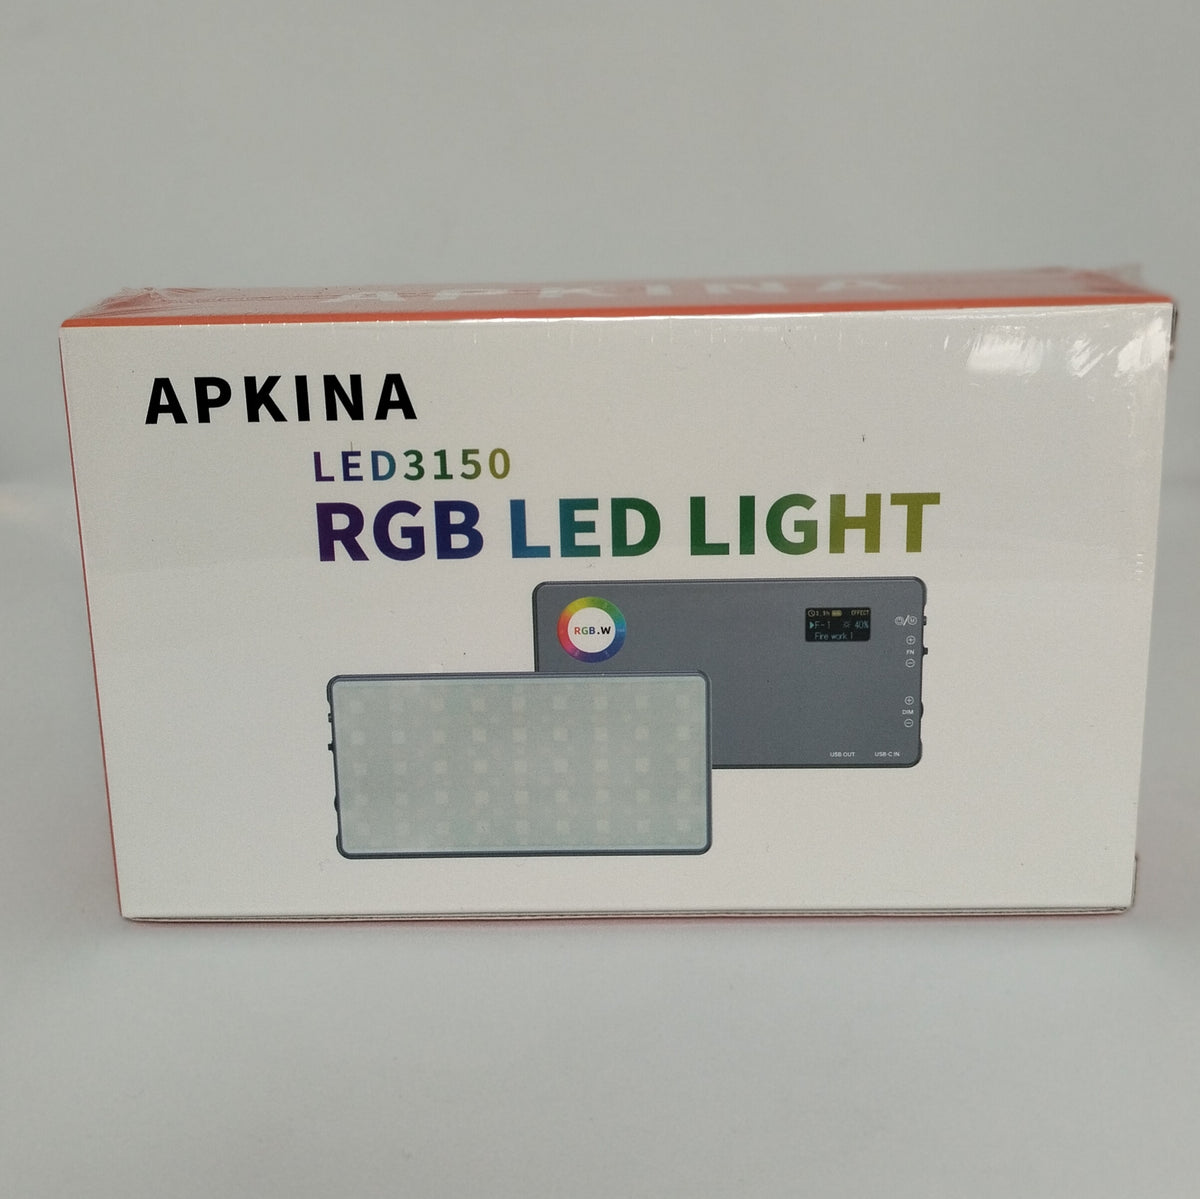 Apkina LED 3150